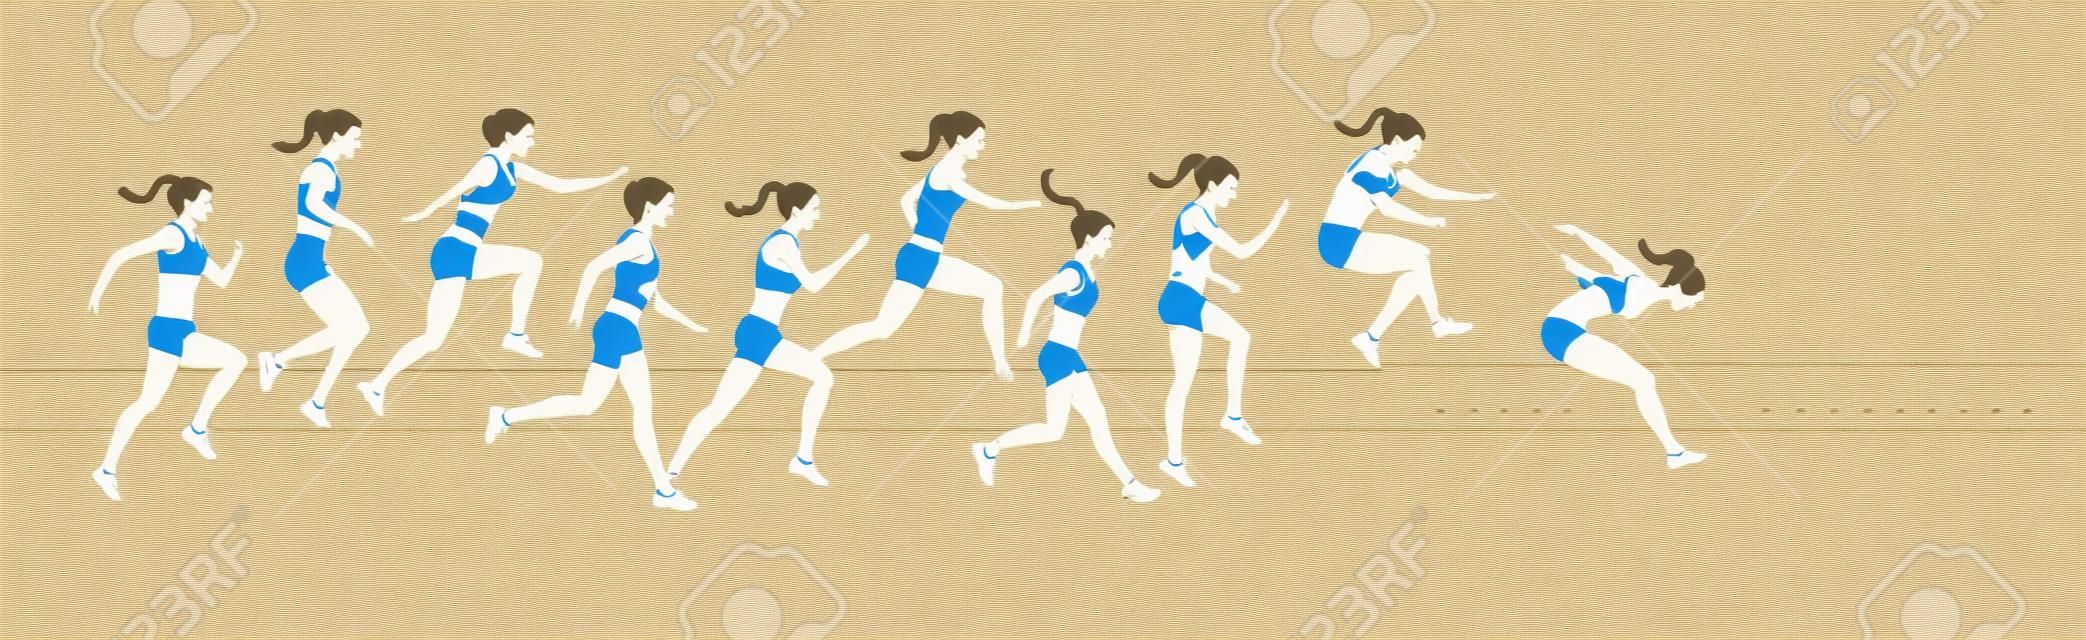 Triple salto mueve ilustración. La mujer salta en uniforme.